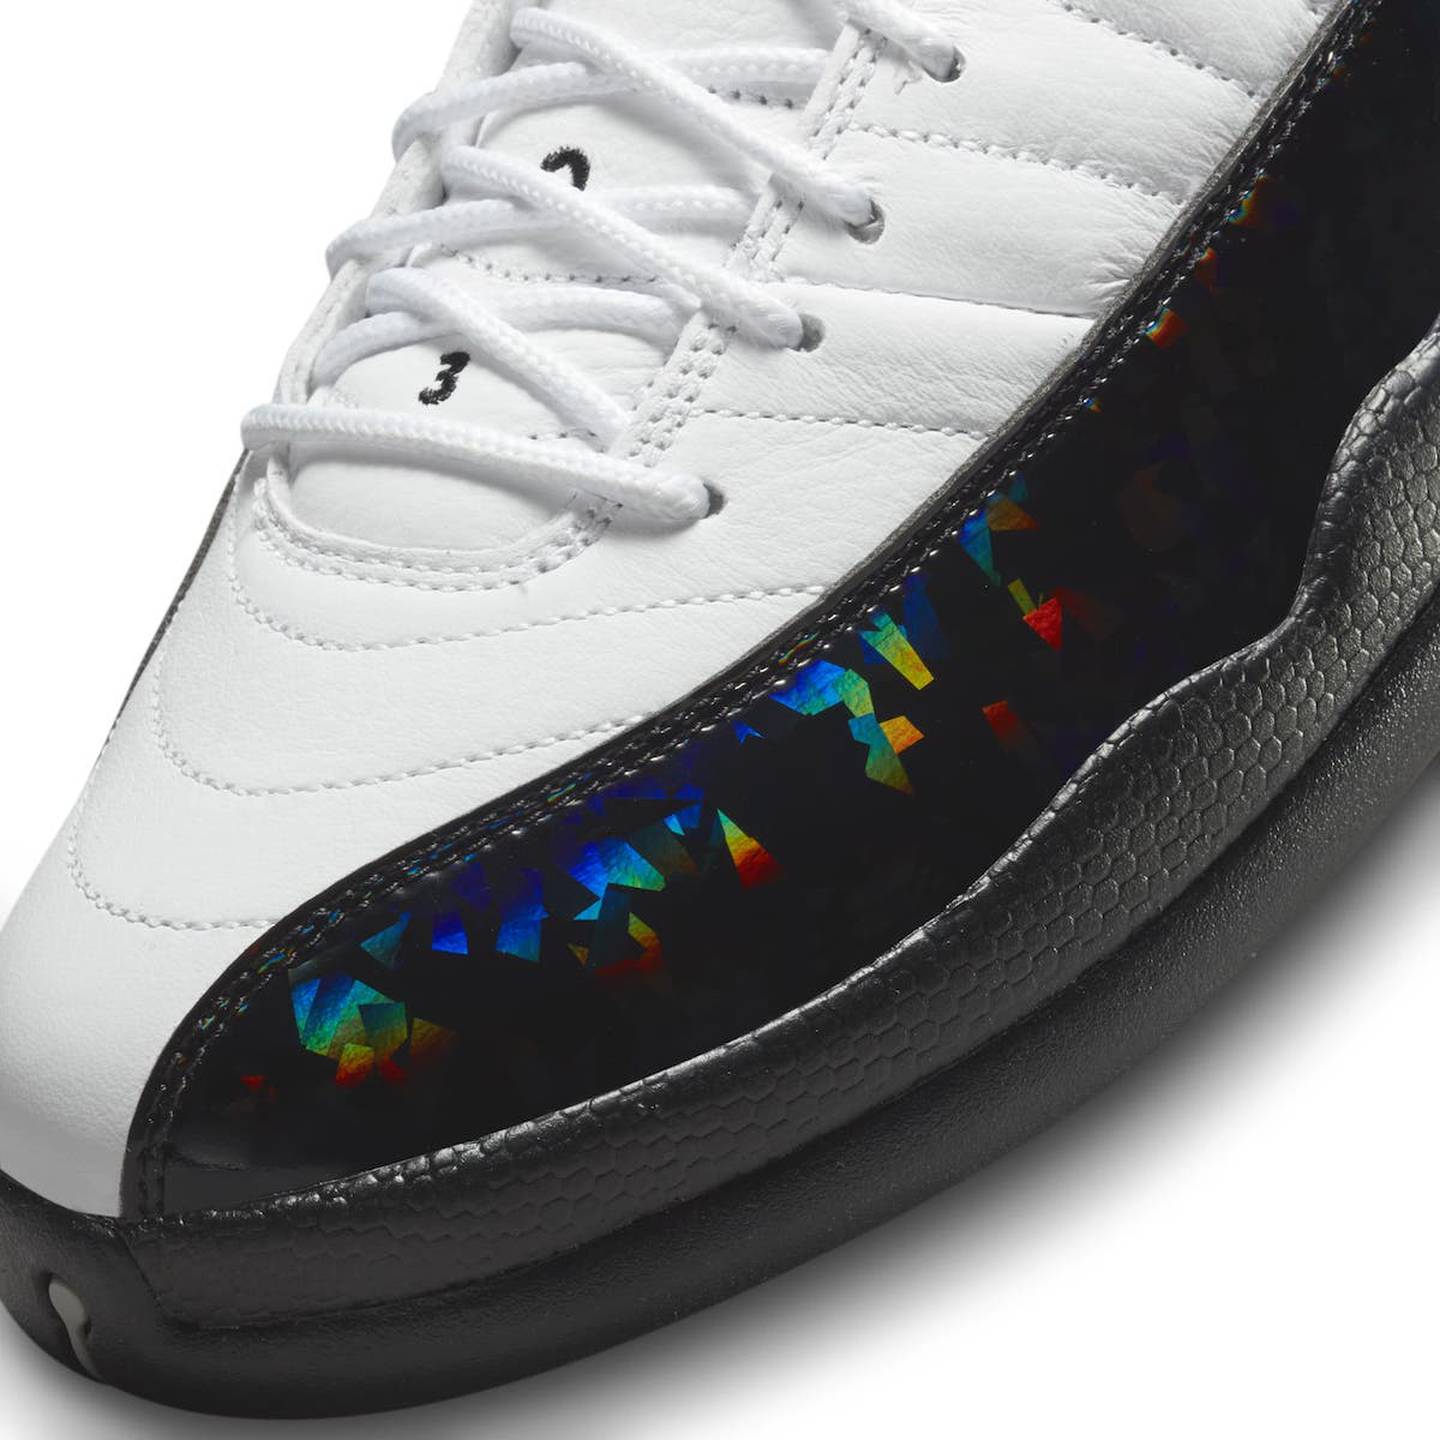 Las zapatillas Air Jordan 12 Low 25 years in China estarán disponibles a partir del 4 de agosto en la tienda en línea Nike SNKRS, por 200 dólares. Servirán para festejar los 25 años de la Jordan Brand en China.